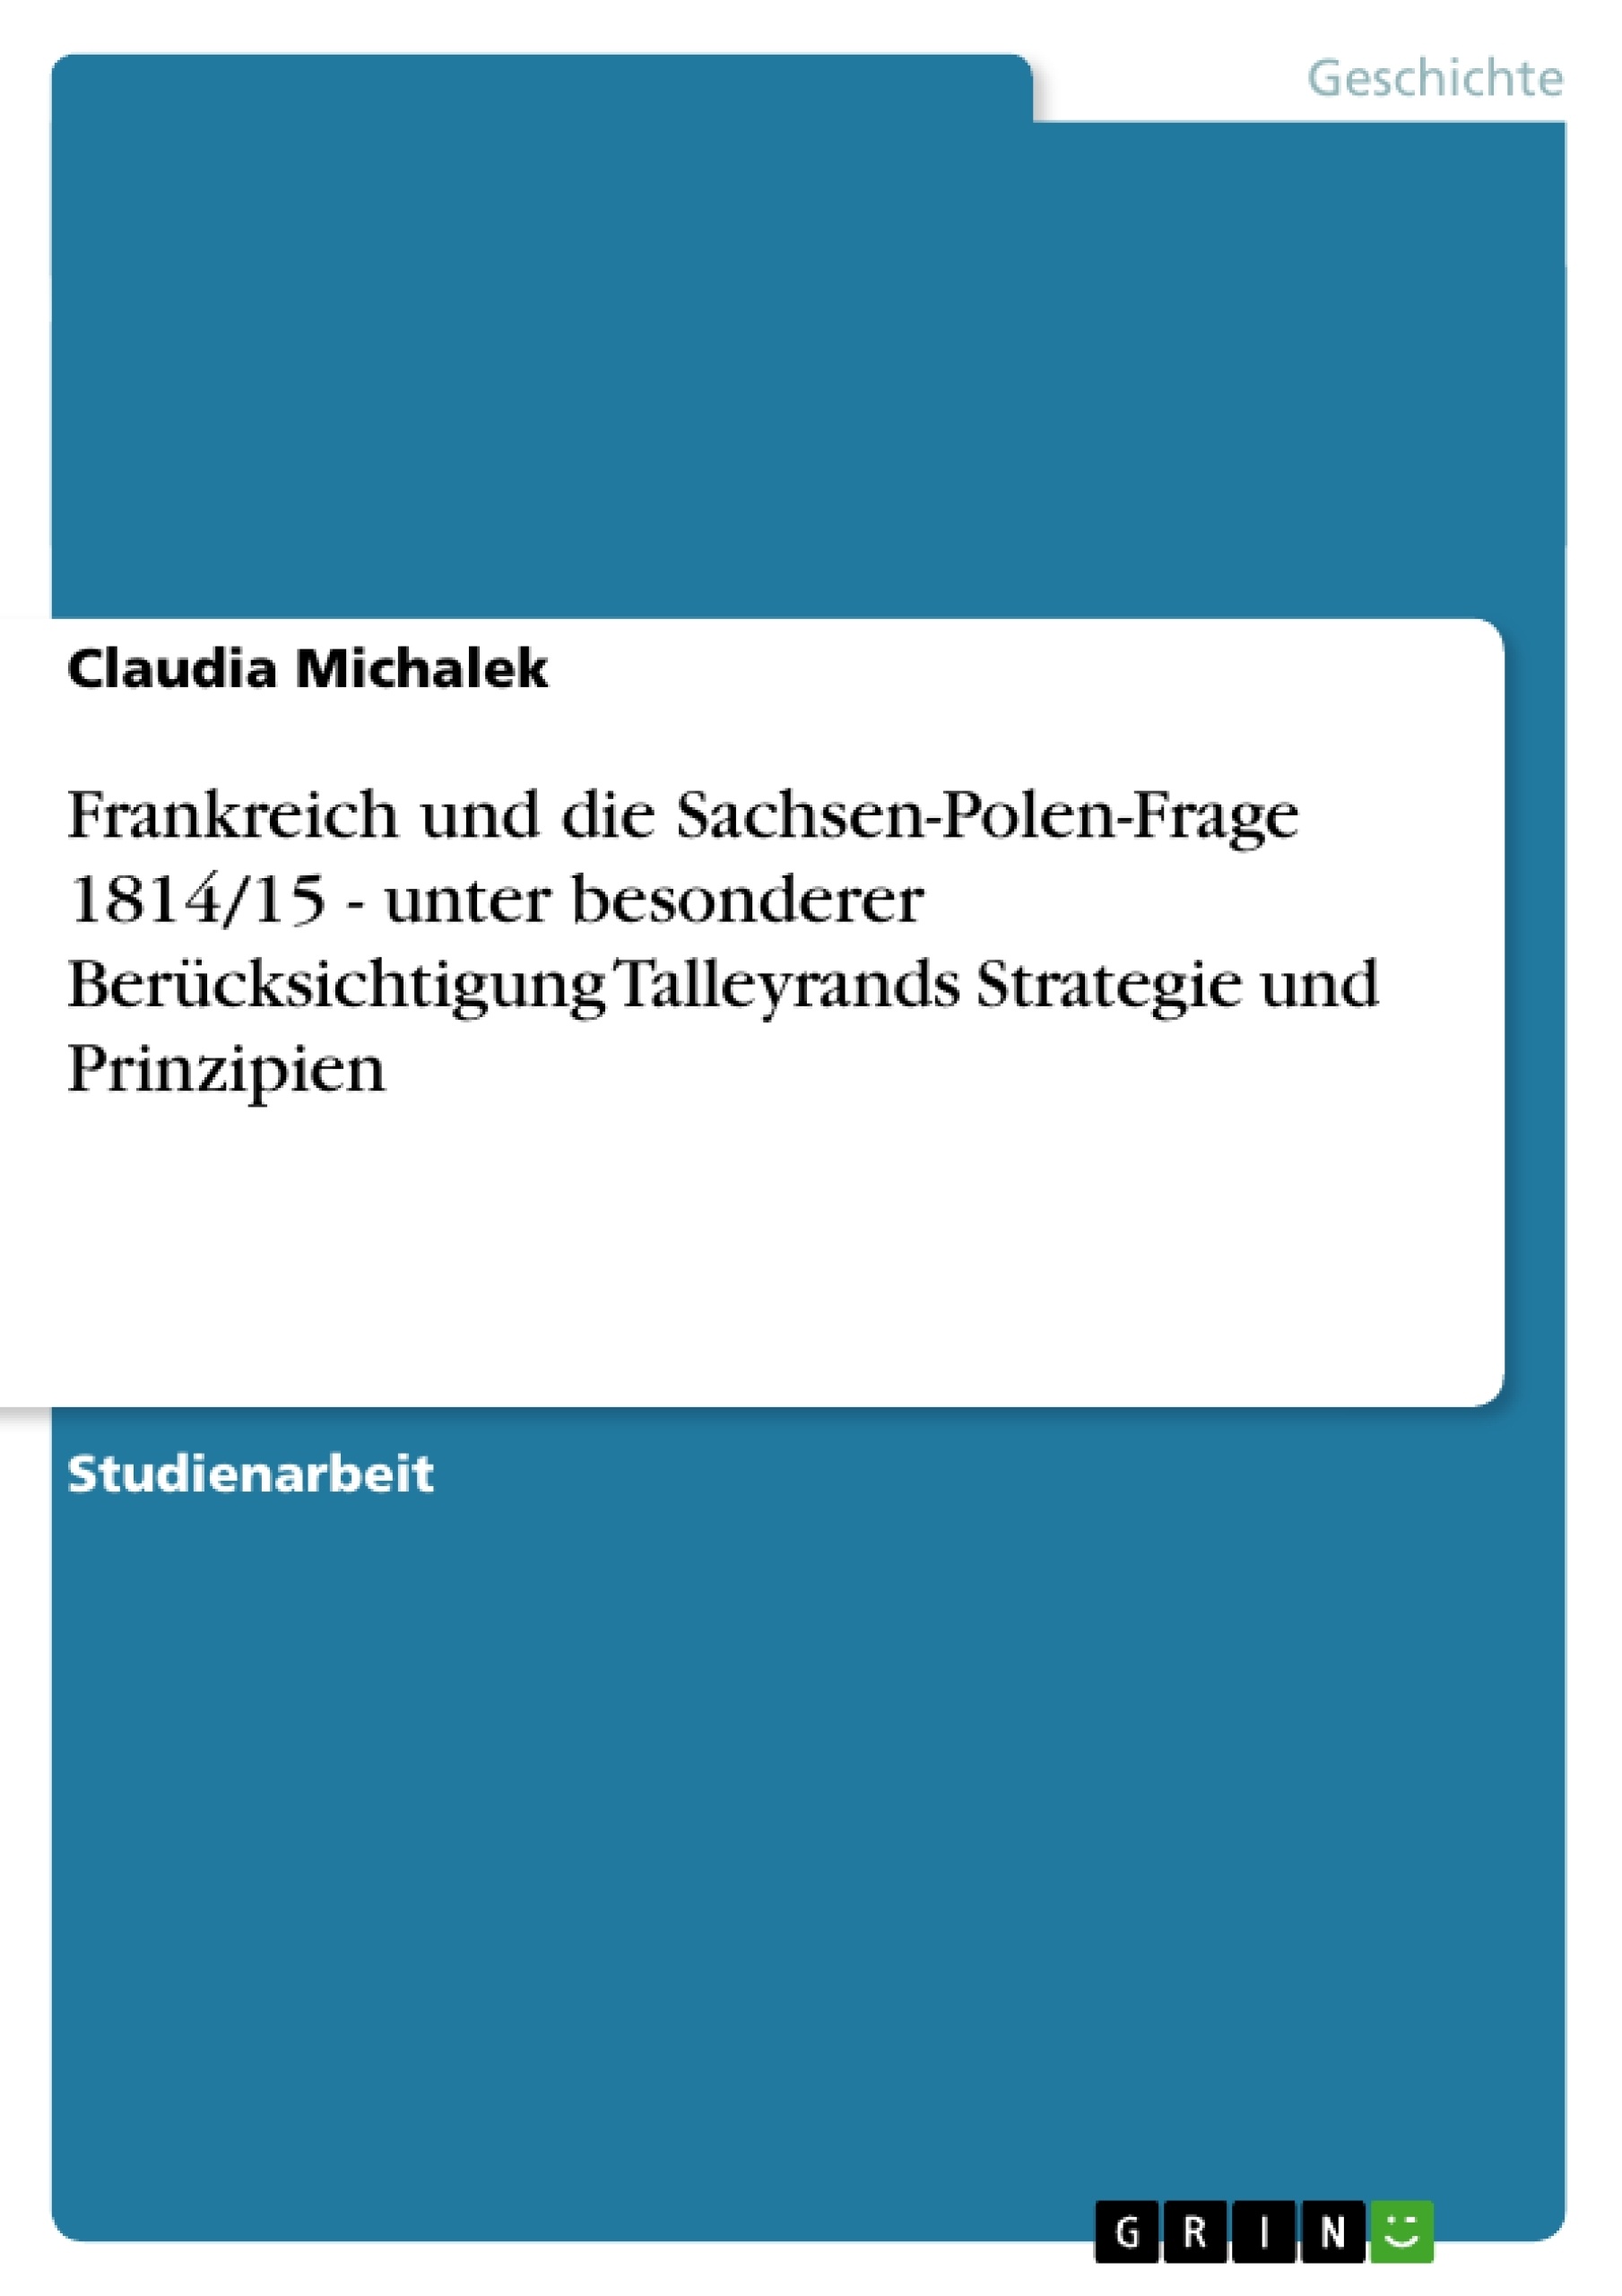 Titel: Frankreich und die Sachsen-Polen-Frage 1814/15 - unter besonderer Berücksichtigung Talleyrands Strategie und Prinzipien